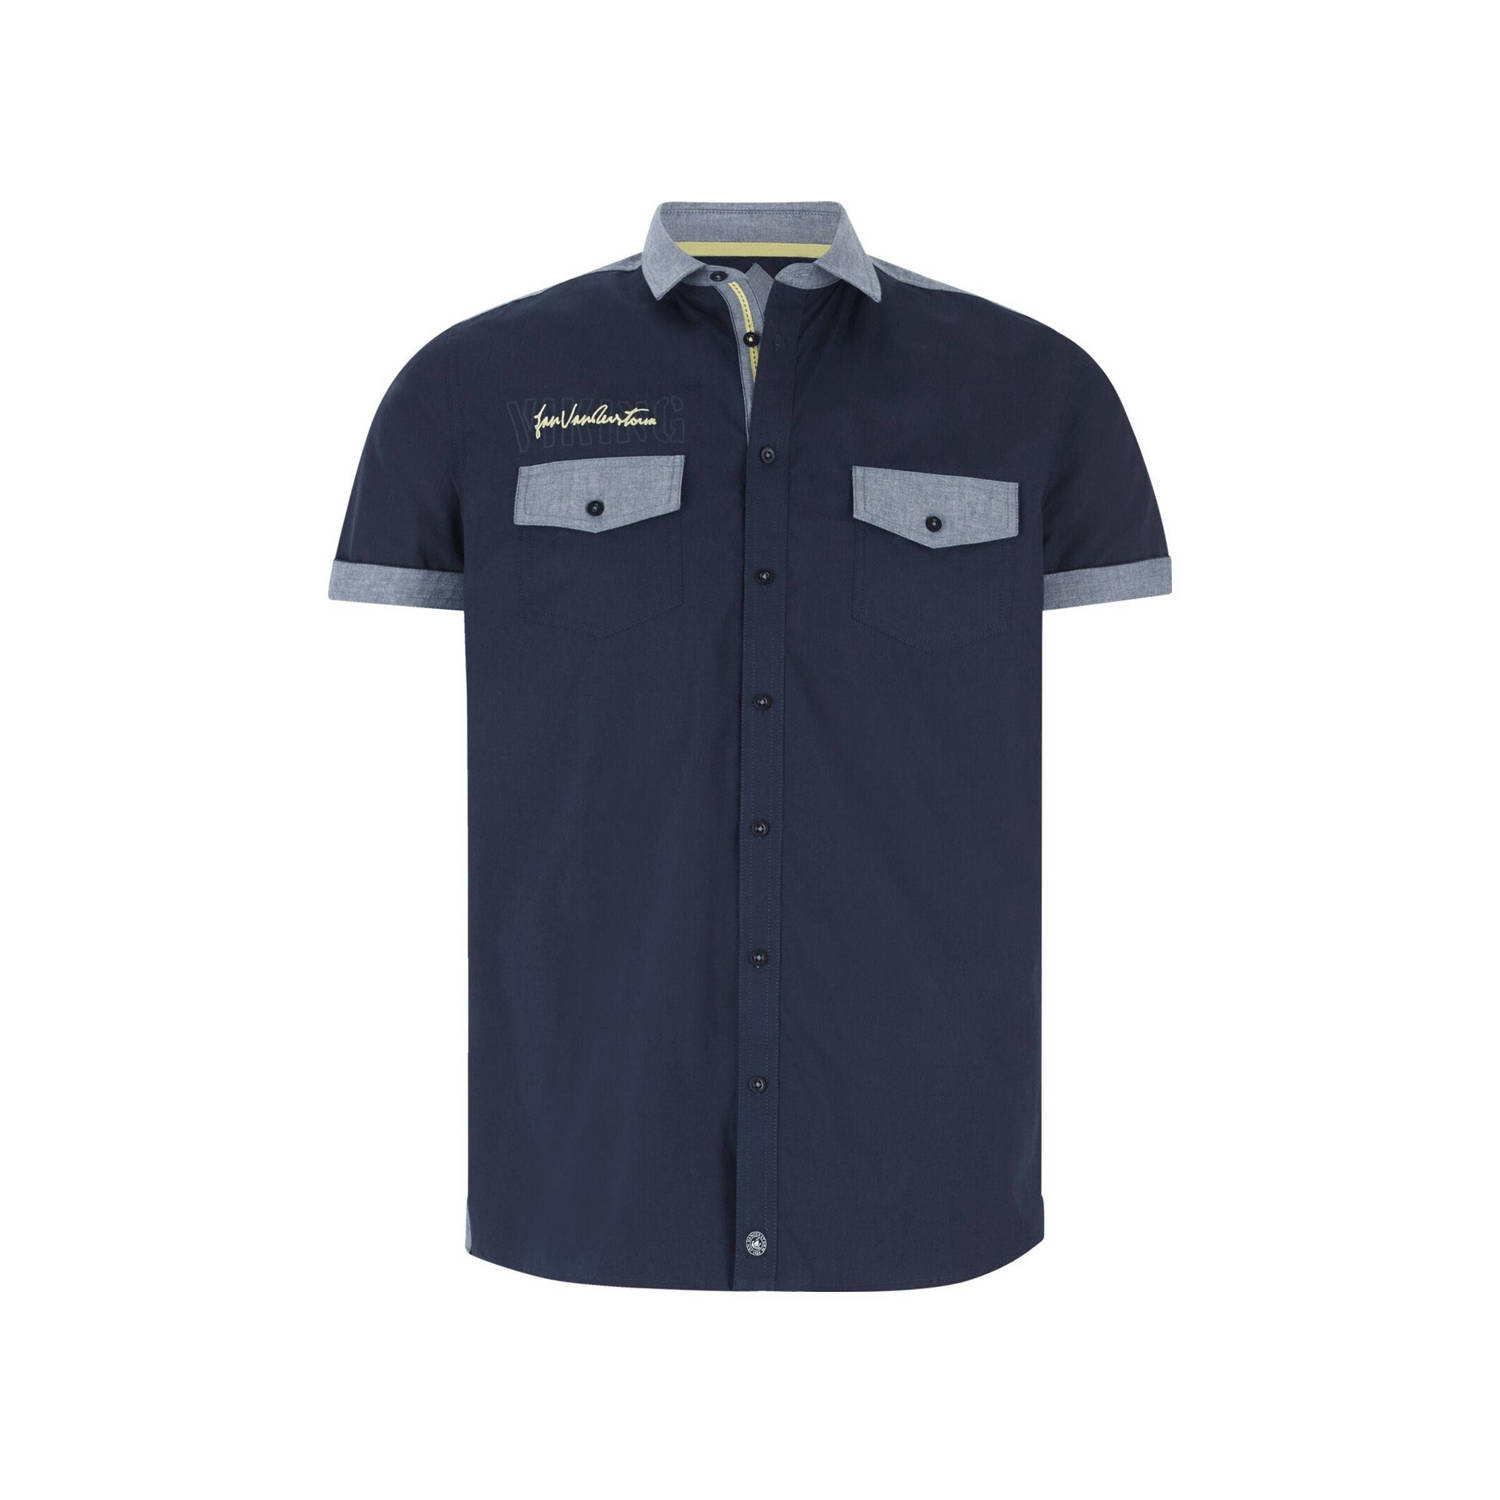 Jan Vanderstorm +FIT Collectie overhemd HERKKO Plus Size met contrastbies donkerblauw